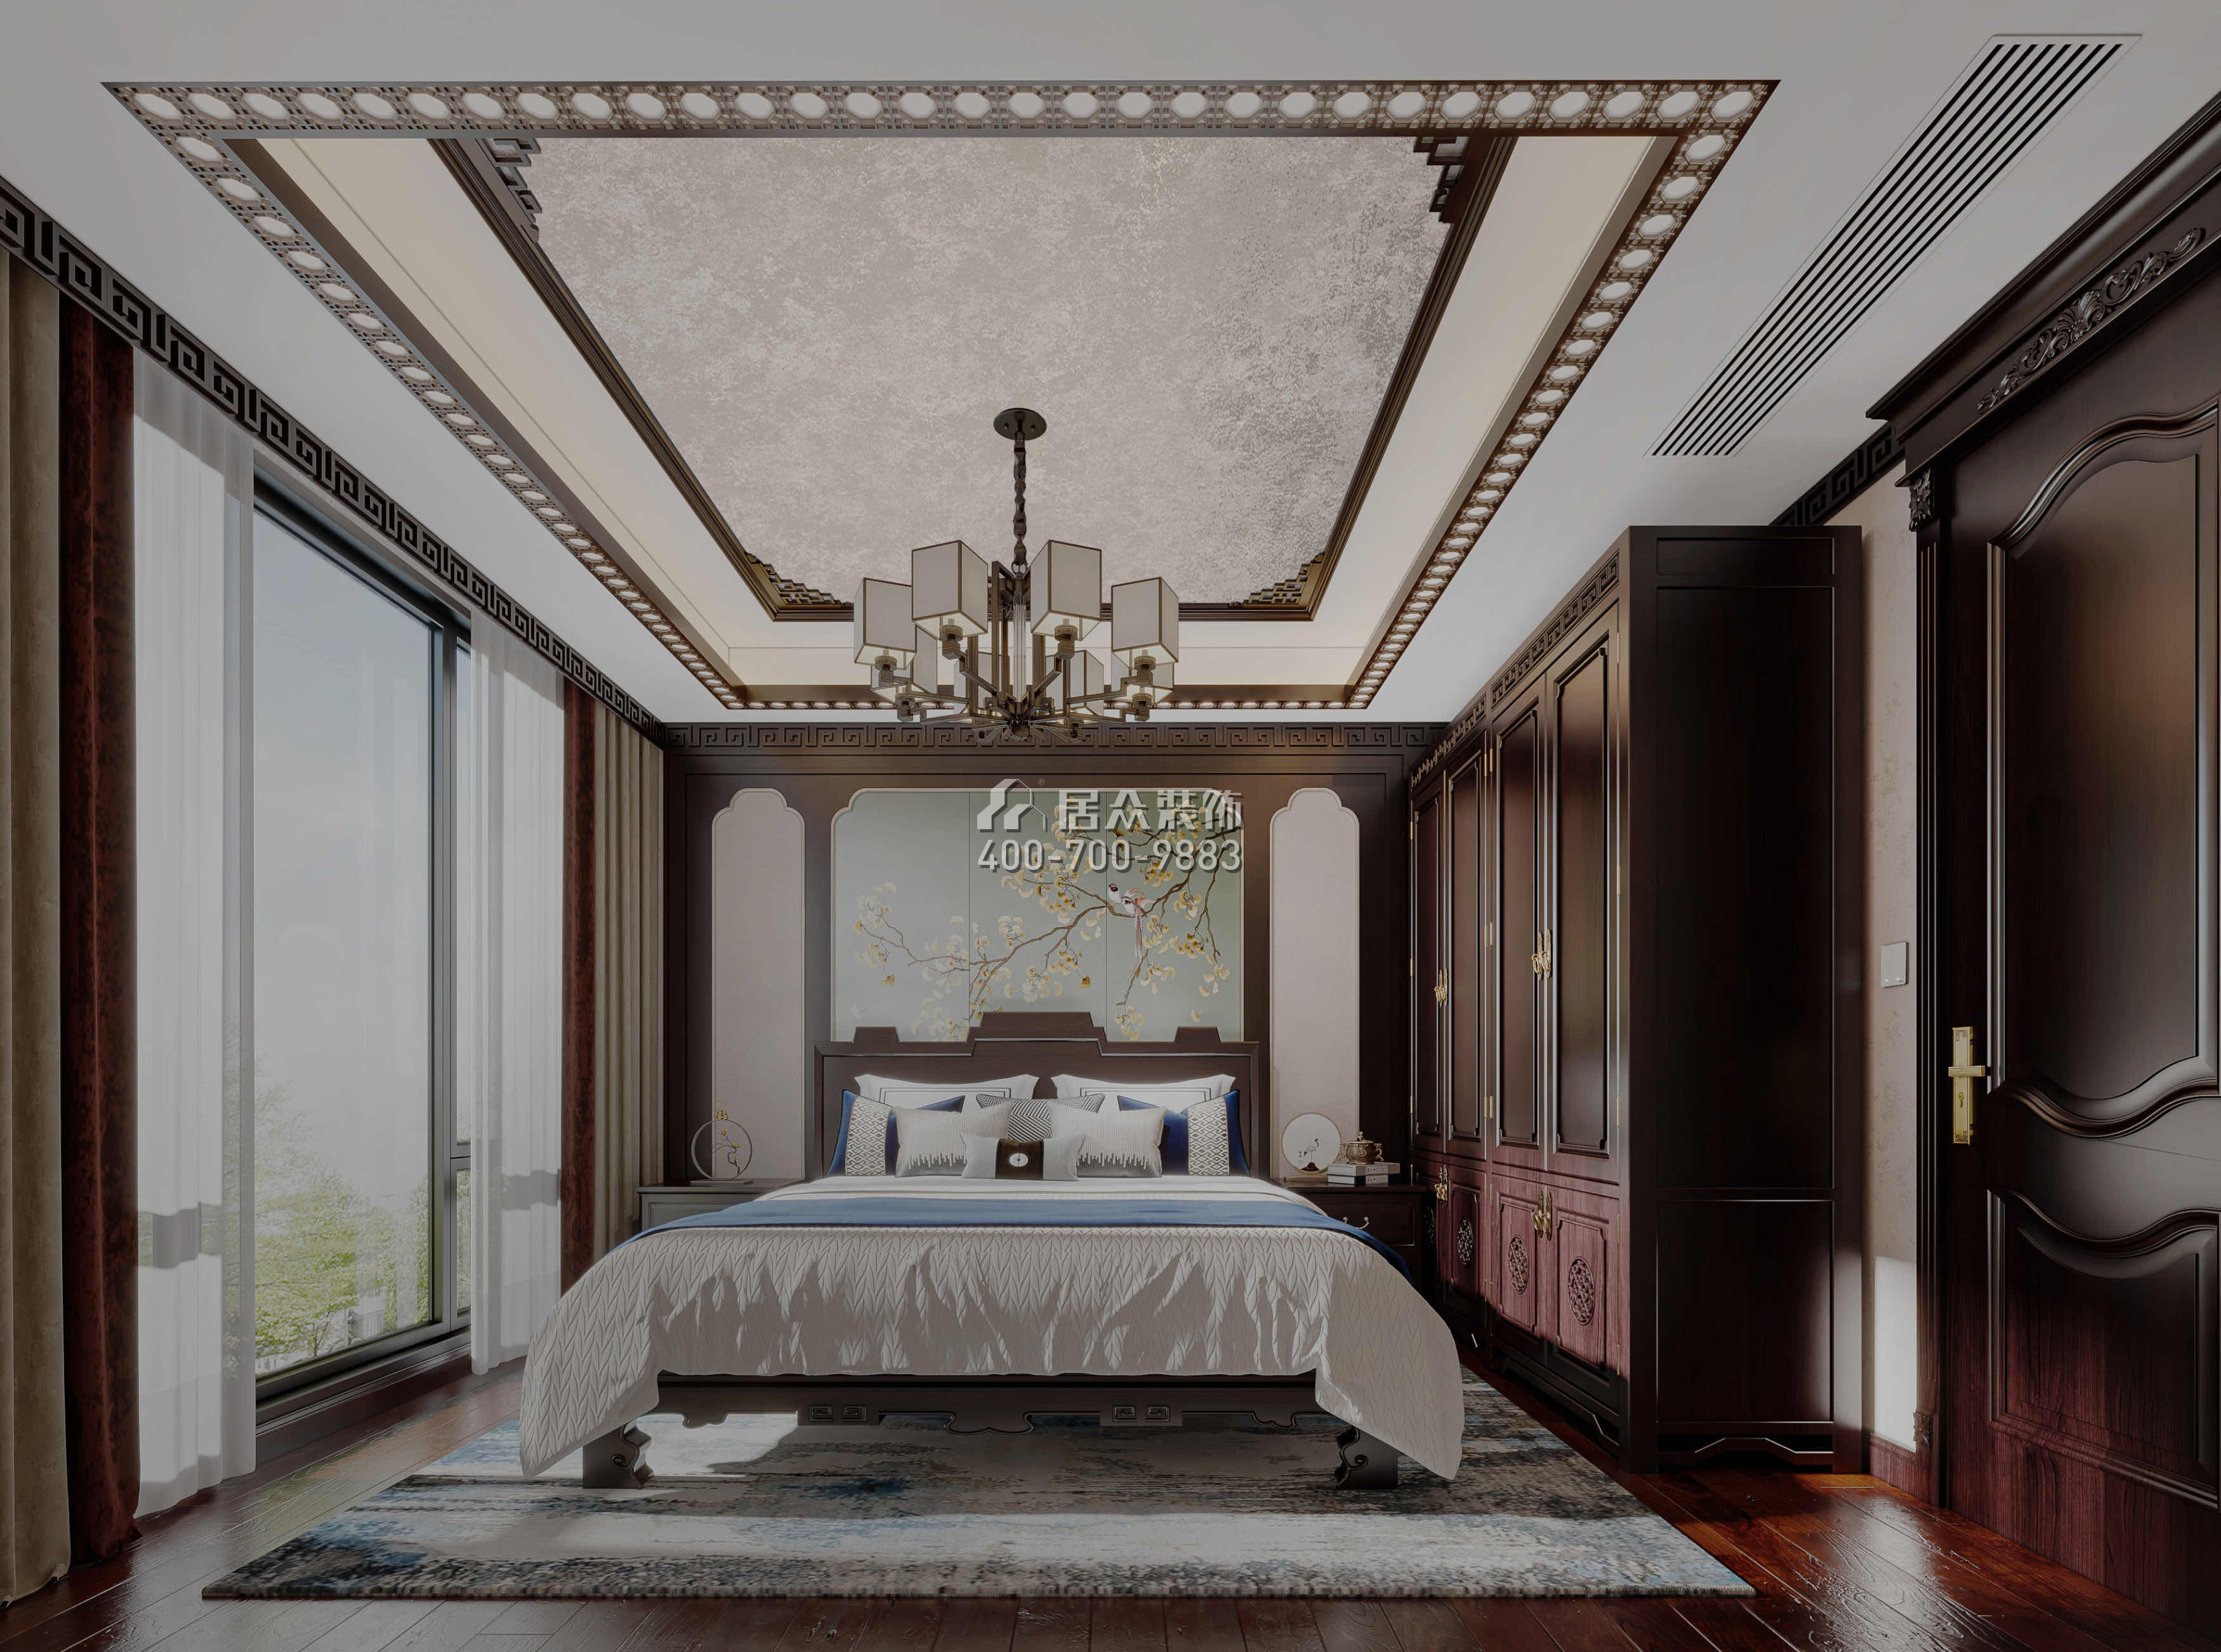 金地格林泊乐270平方米中式风格别墅户型卧室装修效果图